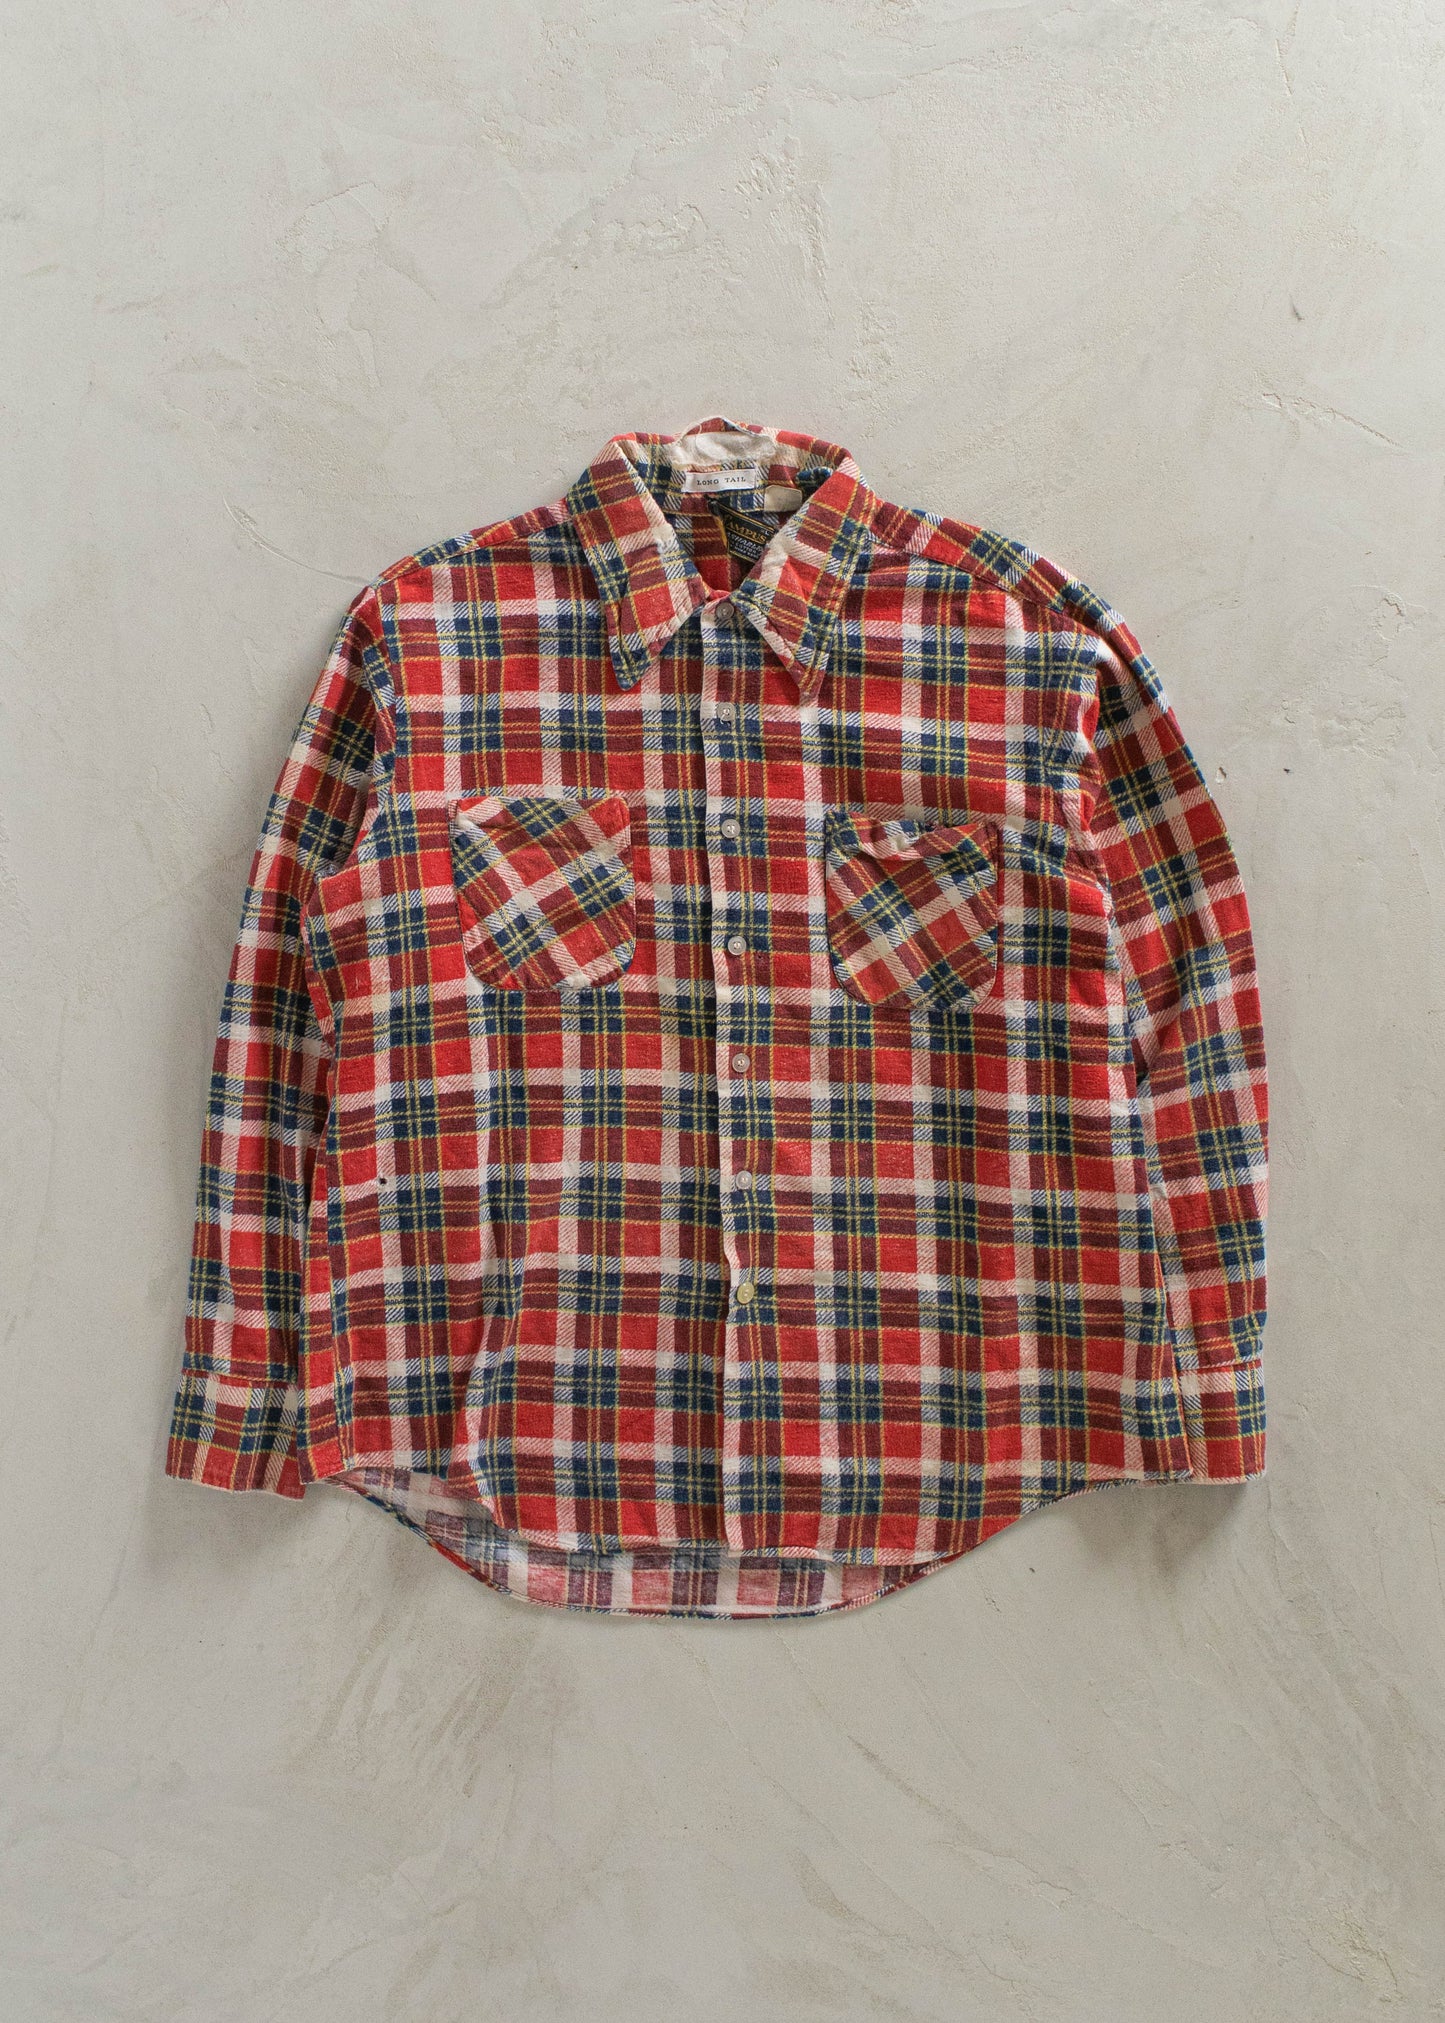 1980s Campus Cotton Flannel Button Up Shirt Size S/M